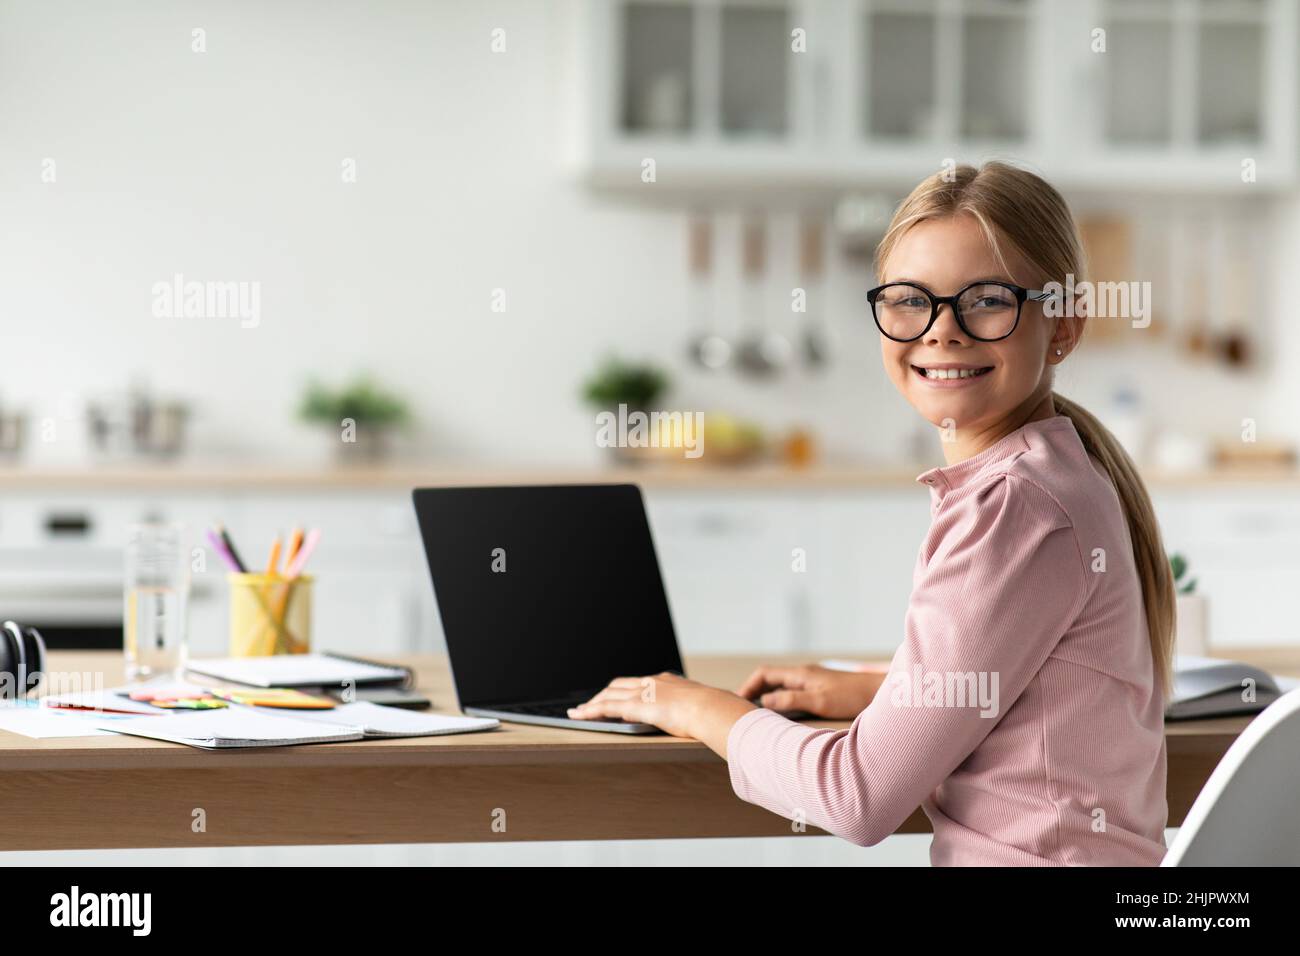 Allegra scolaretta caucasica in occhiali guardare la macchina fotografica al tavolo con il computer con schermo vuoto Foto Stock